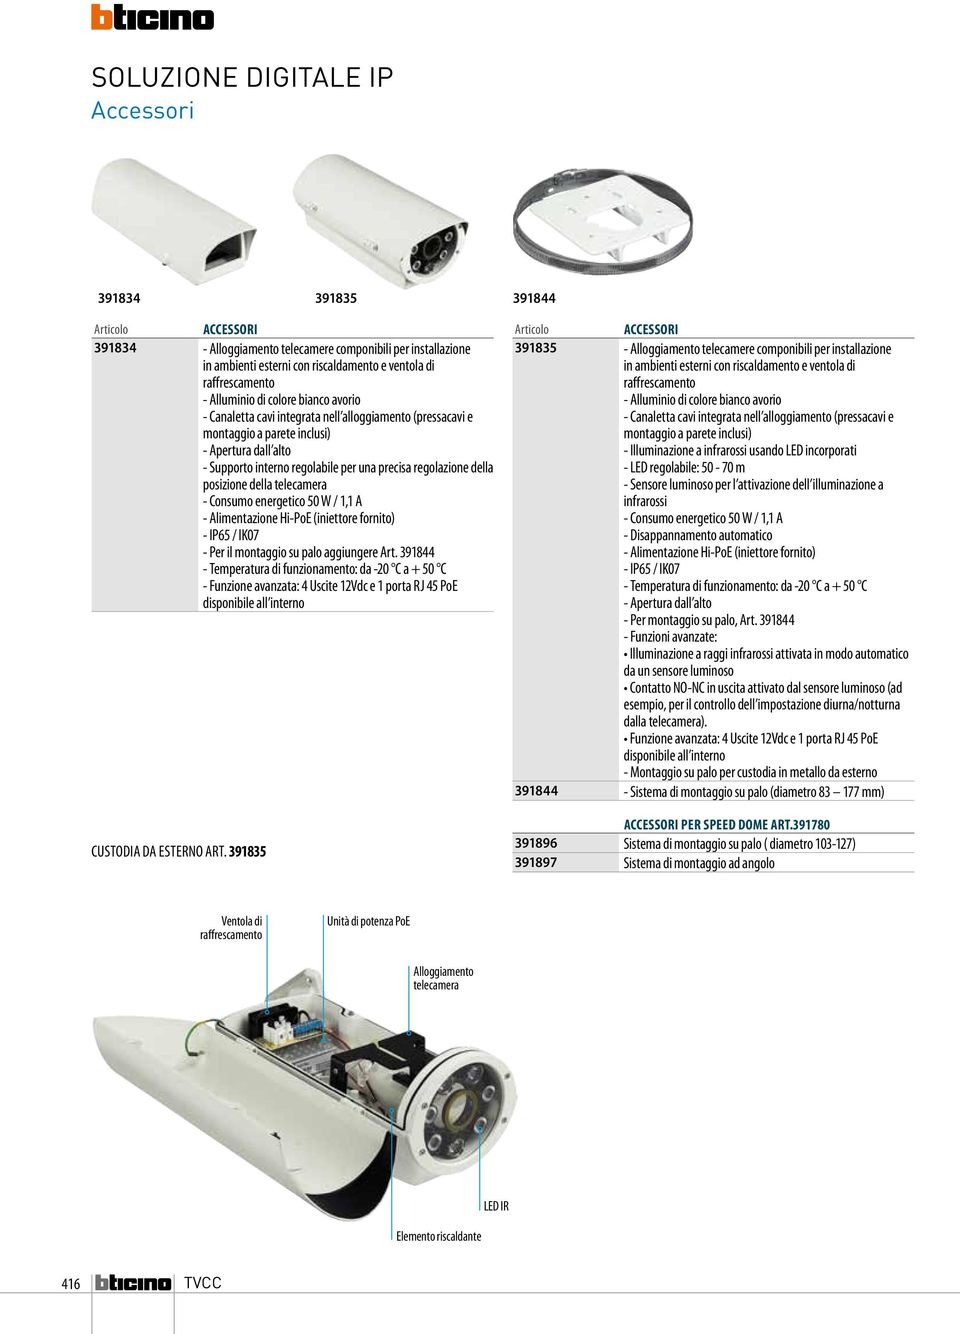 regolazione della posizione della telecamera - Consumo energetico 50 W / 1,1 A - Alimentazione Hi-PoE (iniettore fornito) - IP65 / IK07 - Per il montaggio su palo aggiungere Art.